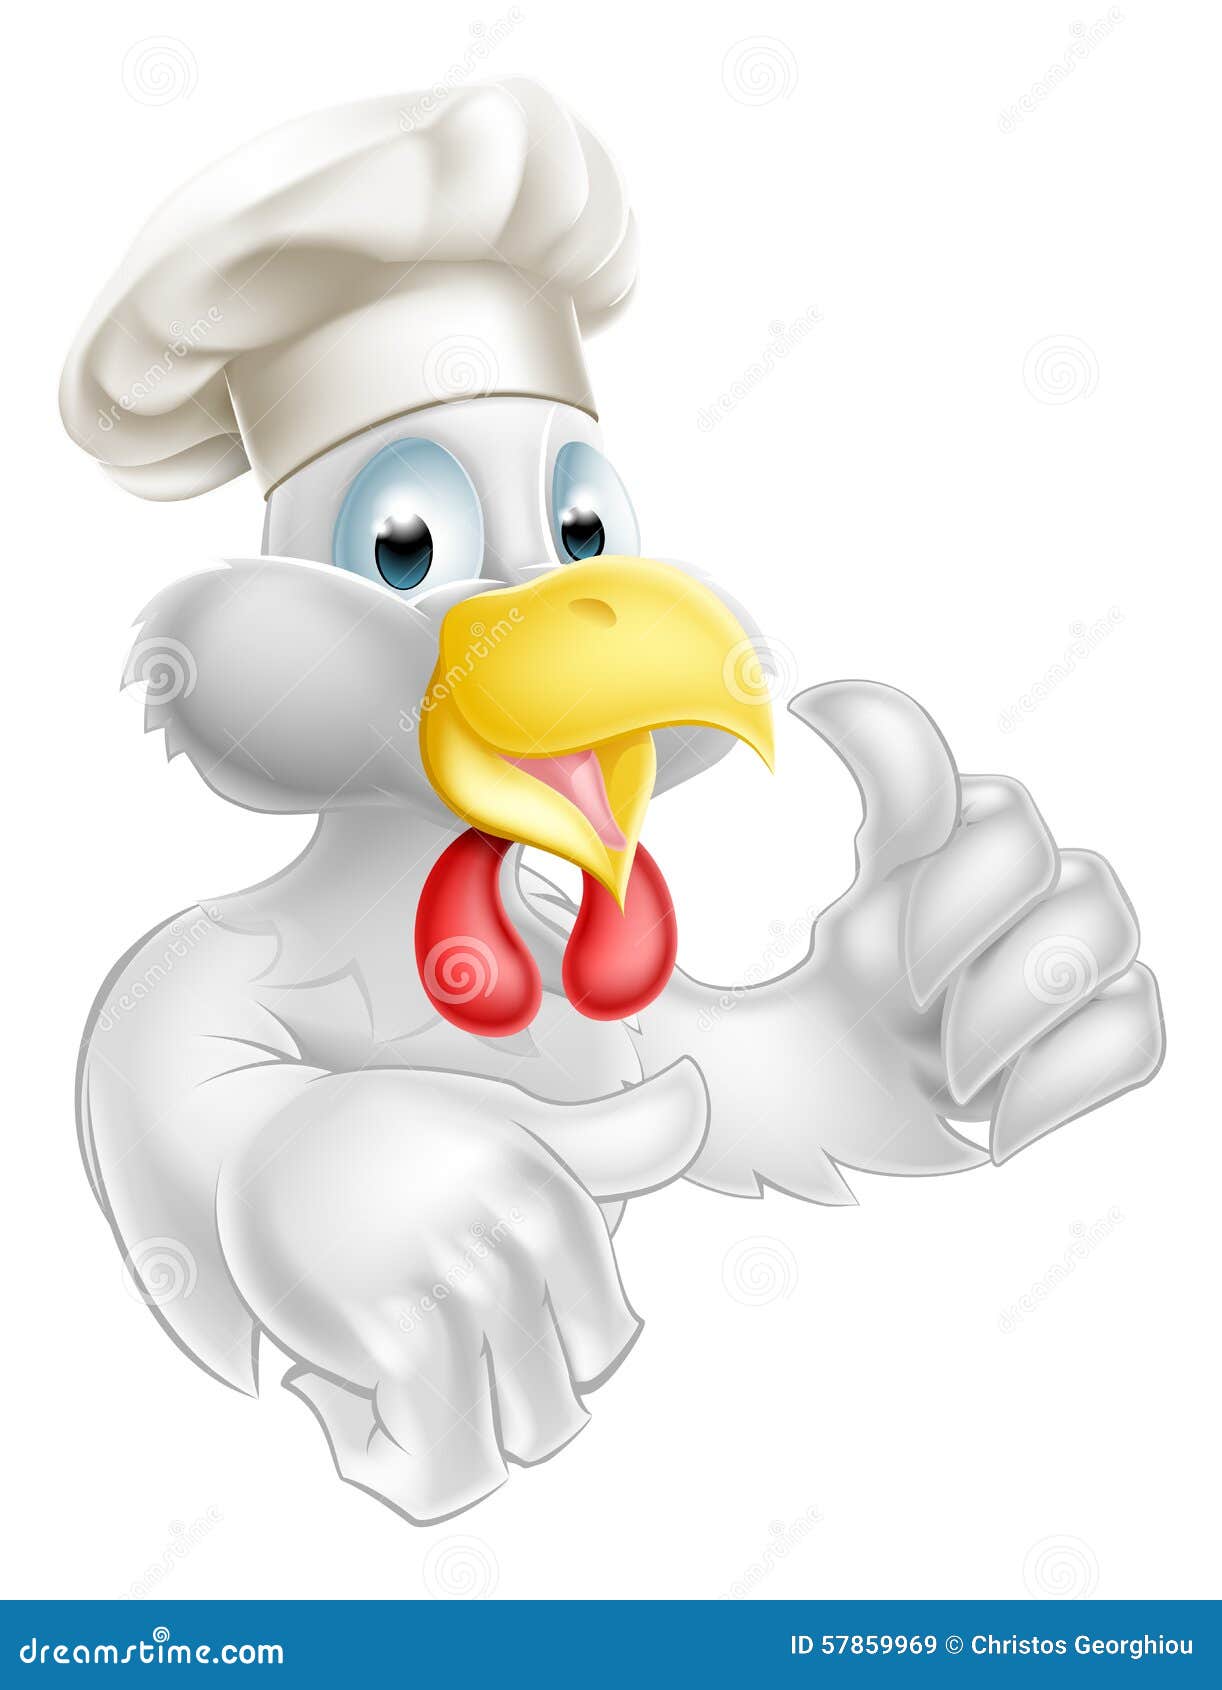 chicken chef clipart - photo #47